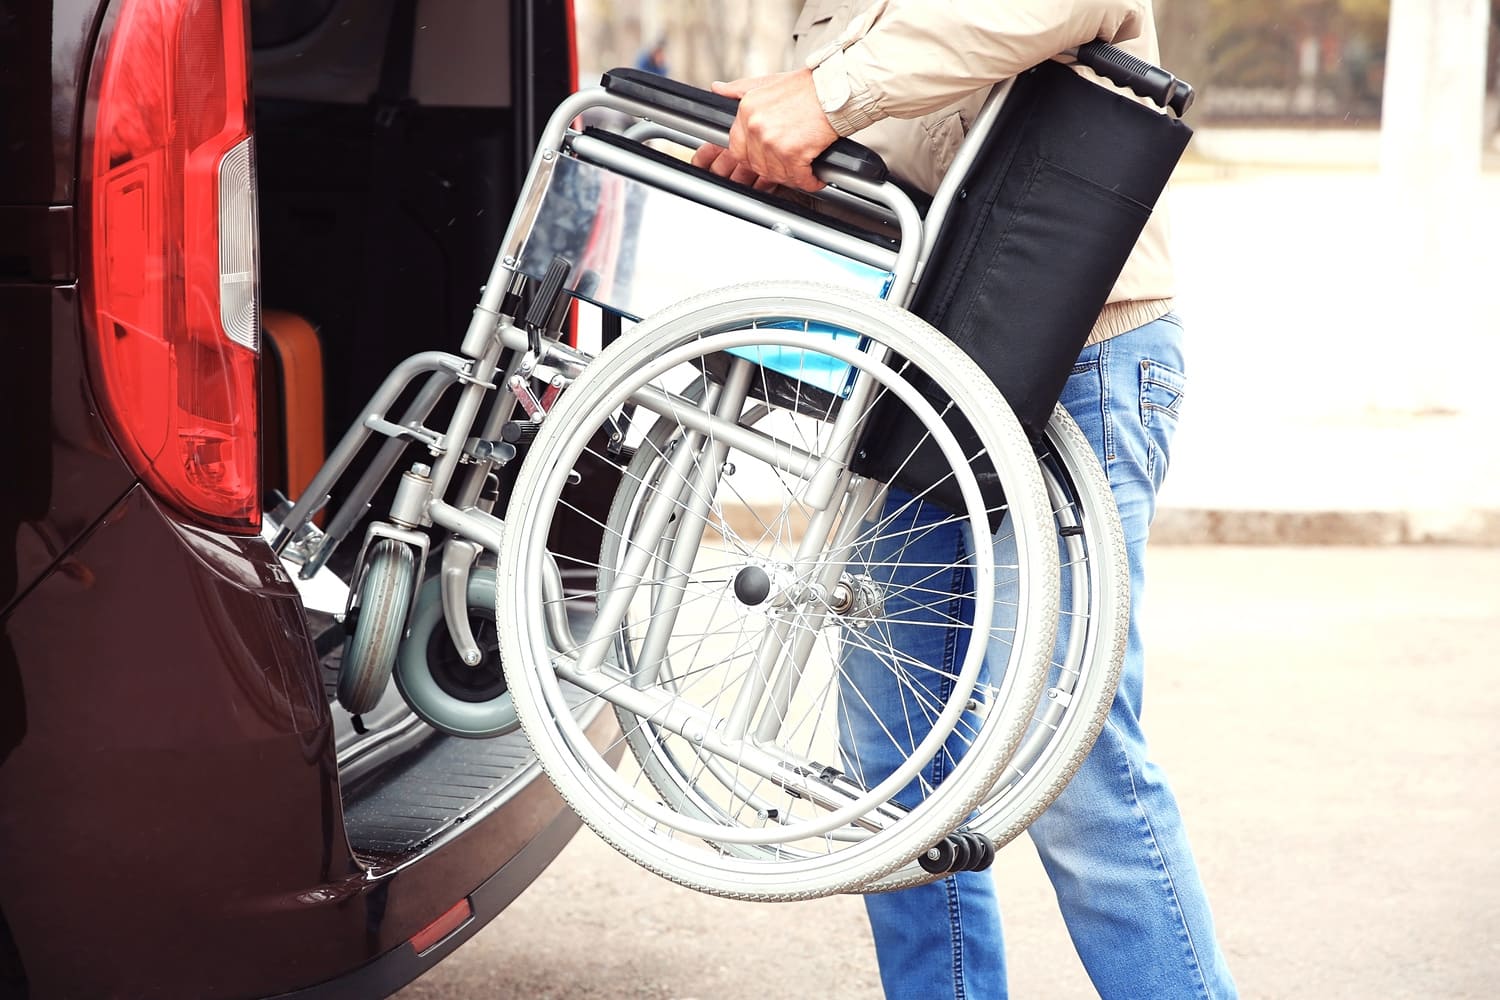 Chargement d'un fauteuil roulant dans un véhicule